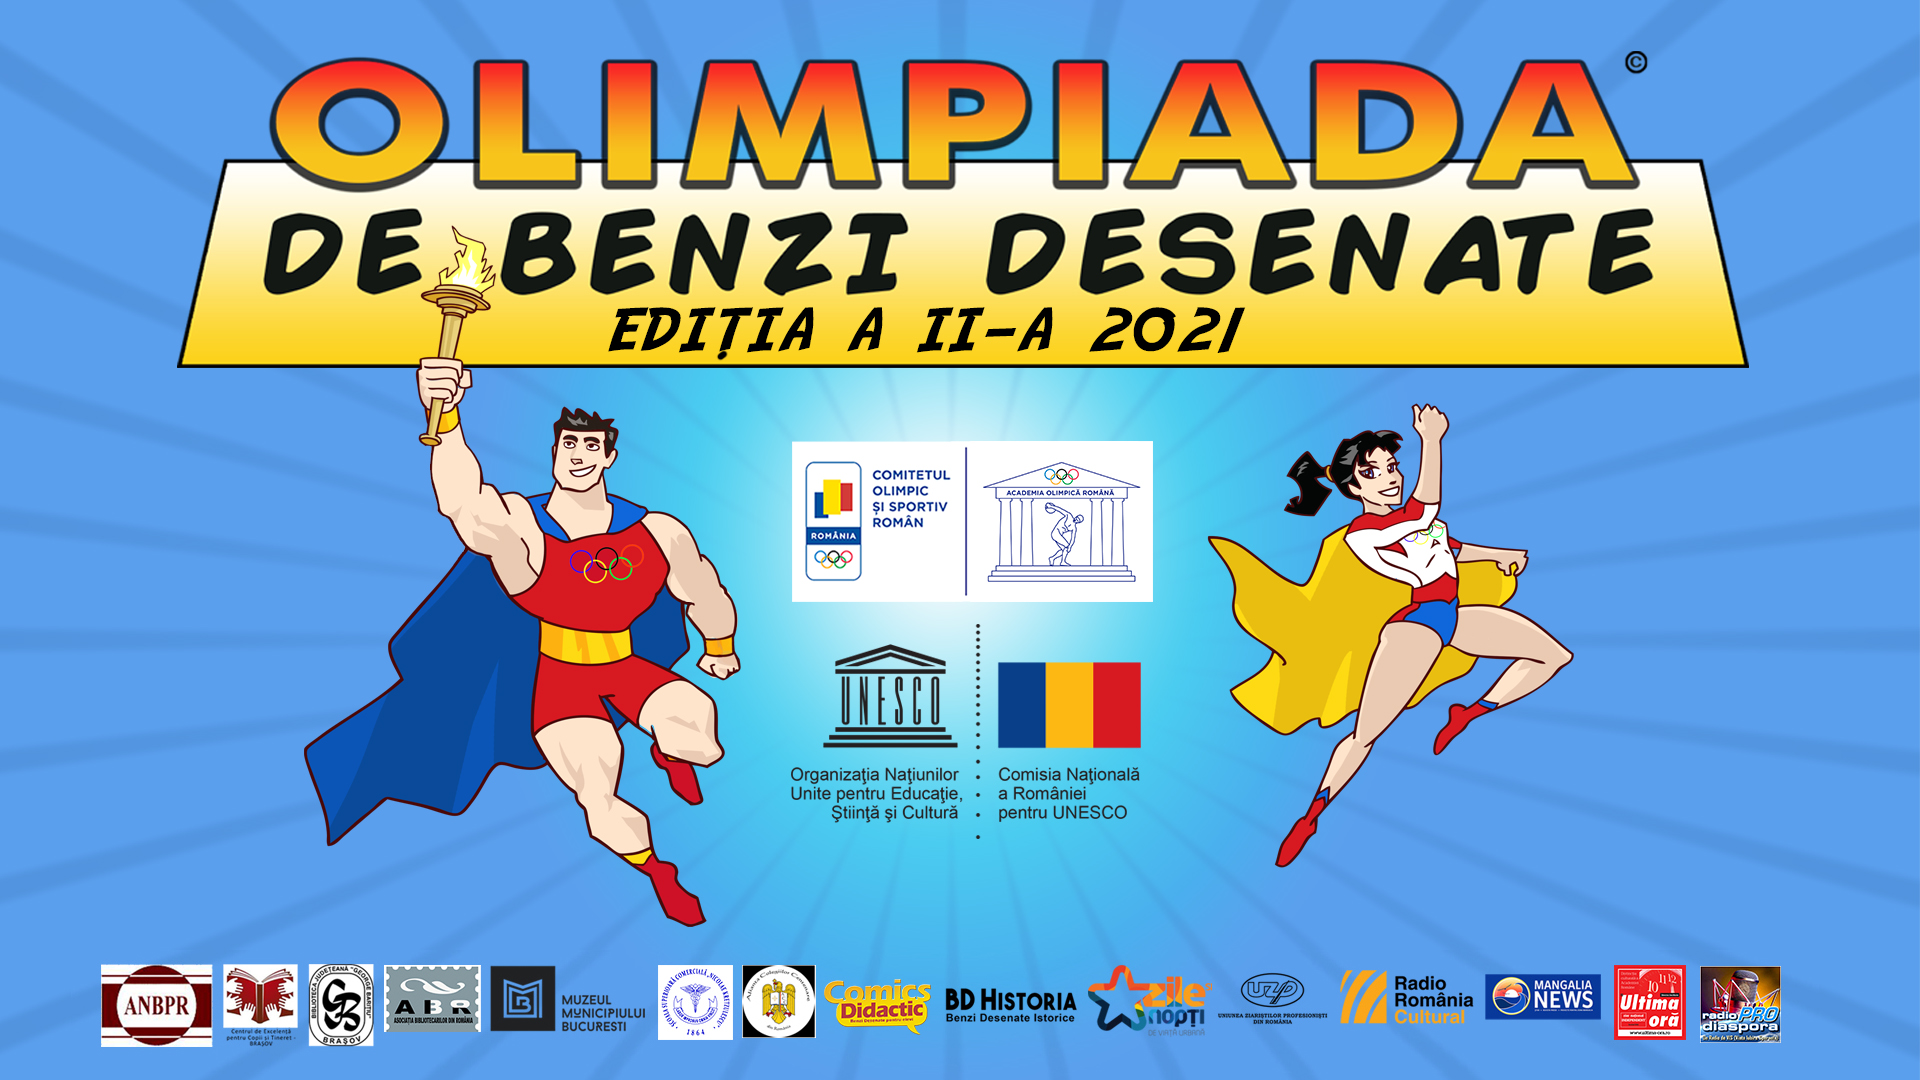 Festivalul ”Povestiri istorice în Benzi Desenate” - un regal al benzilor desenate românești cu subiect istoric – la MNIR